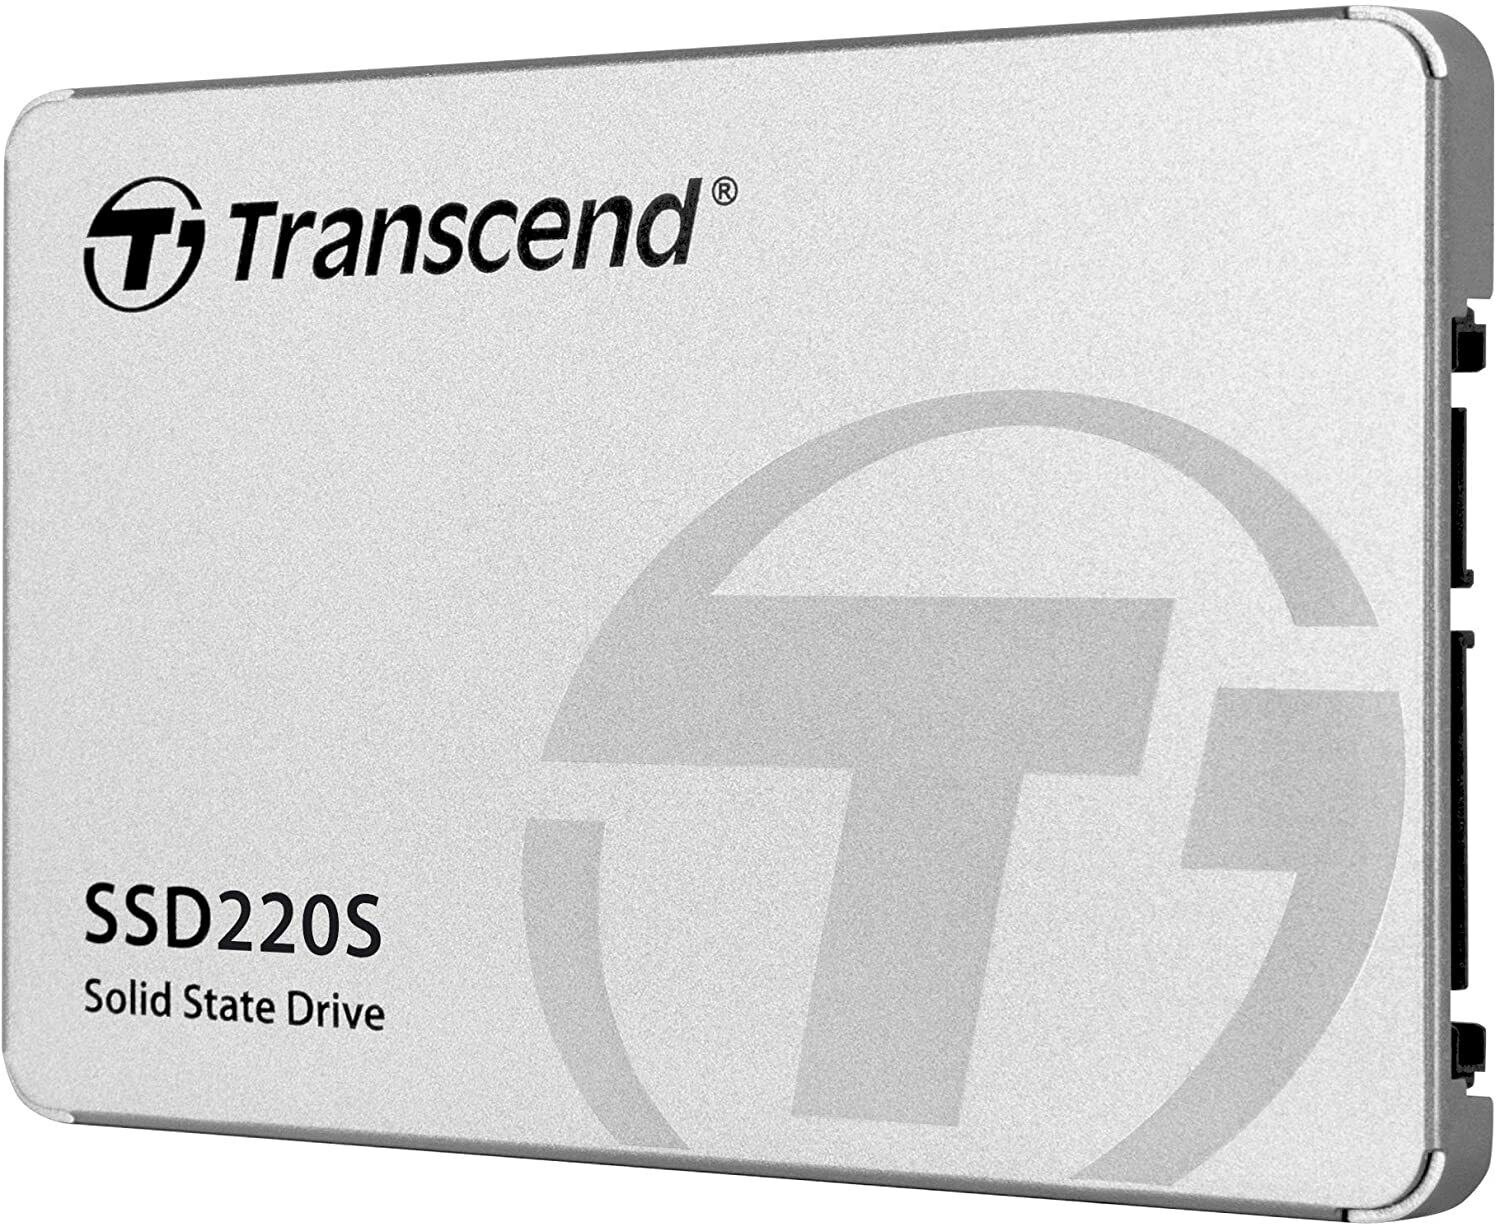 Transcend SSD220S 240 GB 2.5 Inch SATA III 6 Gbs Internal Solid State Drive SSD 